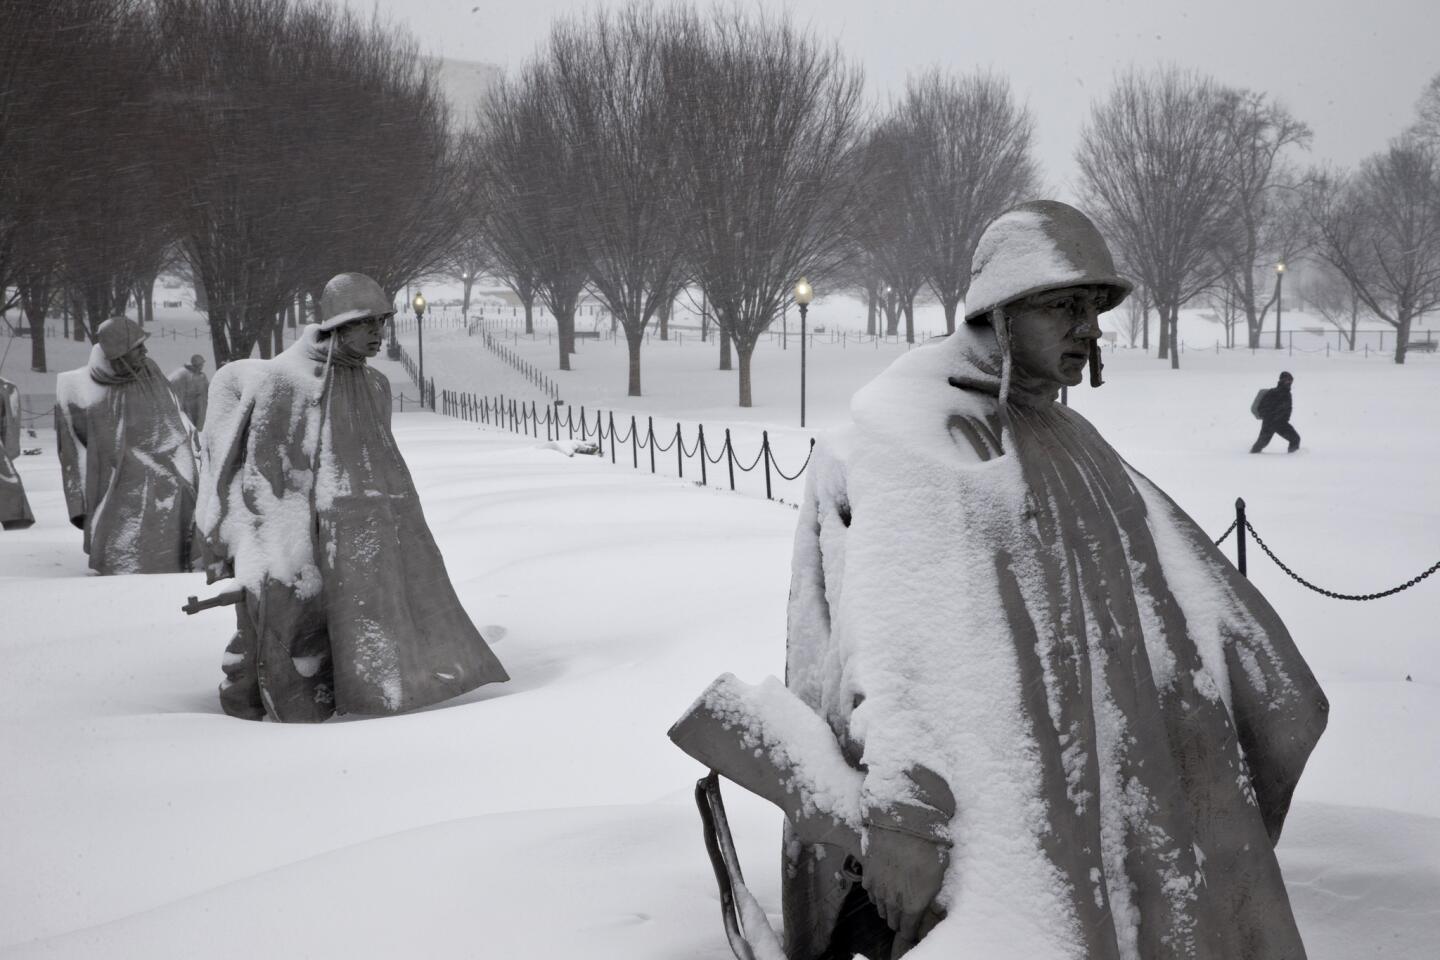 Un peatón camina cerca del monumento a los veteranos de la Guerra de Corea, luego de una nevada el sábado 23 de enero de 2016 en Washington DC. (Foto AP/Alex Brandon)